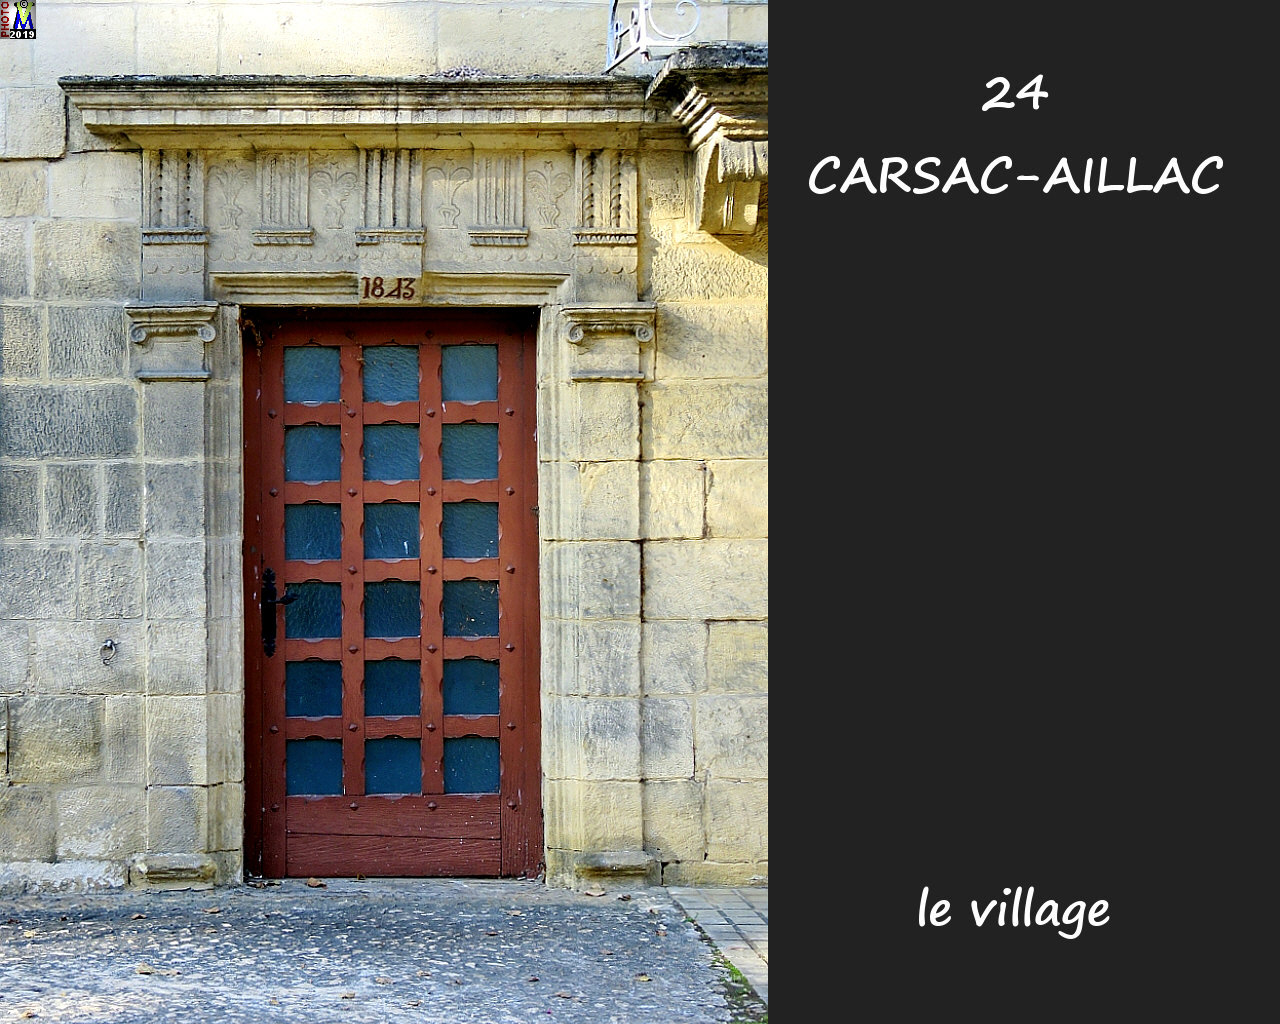 24CARSAC-AILLAC_village_1014.jpg